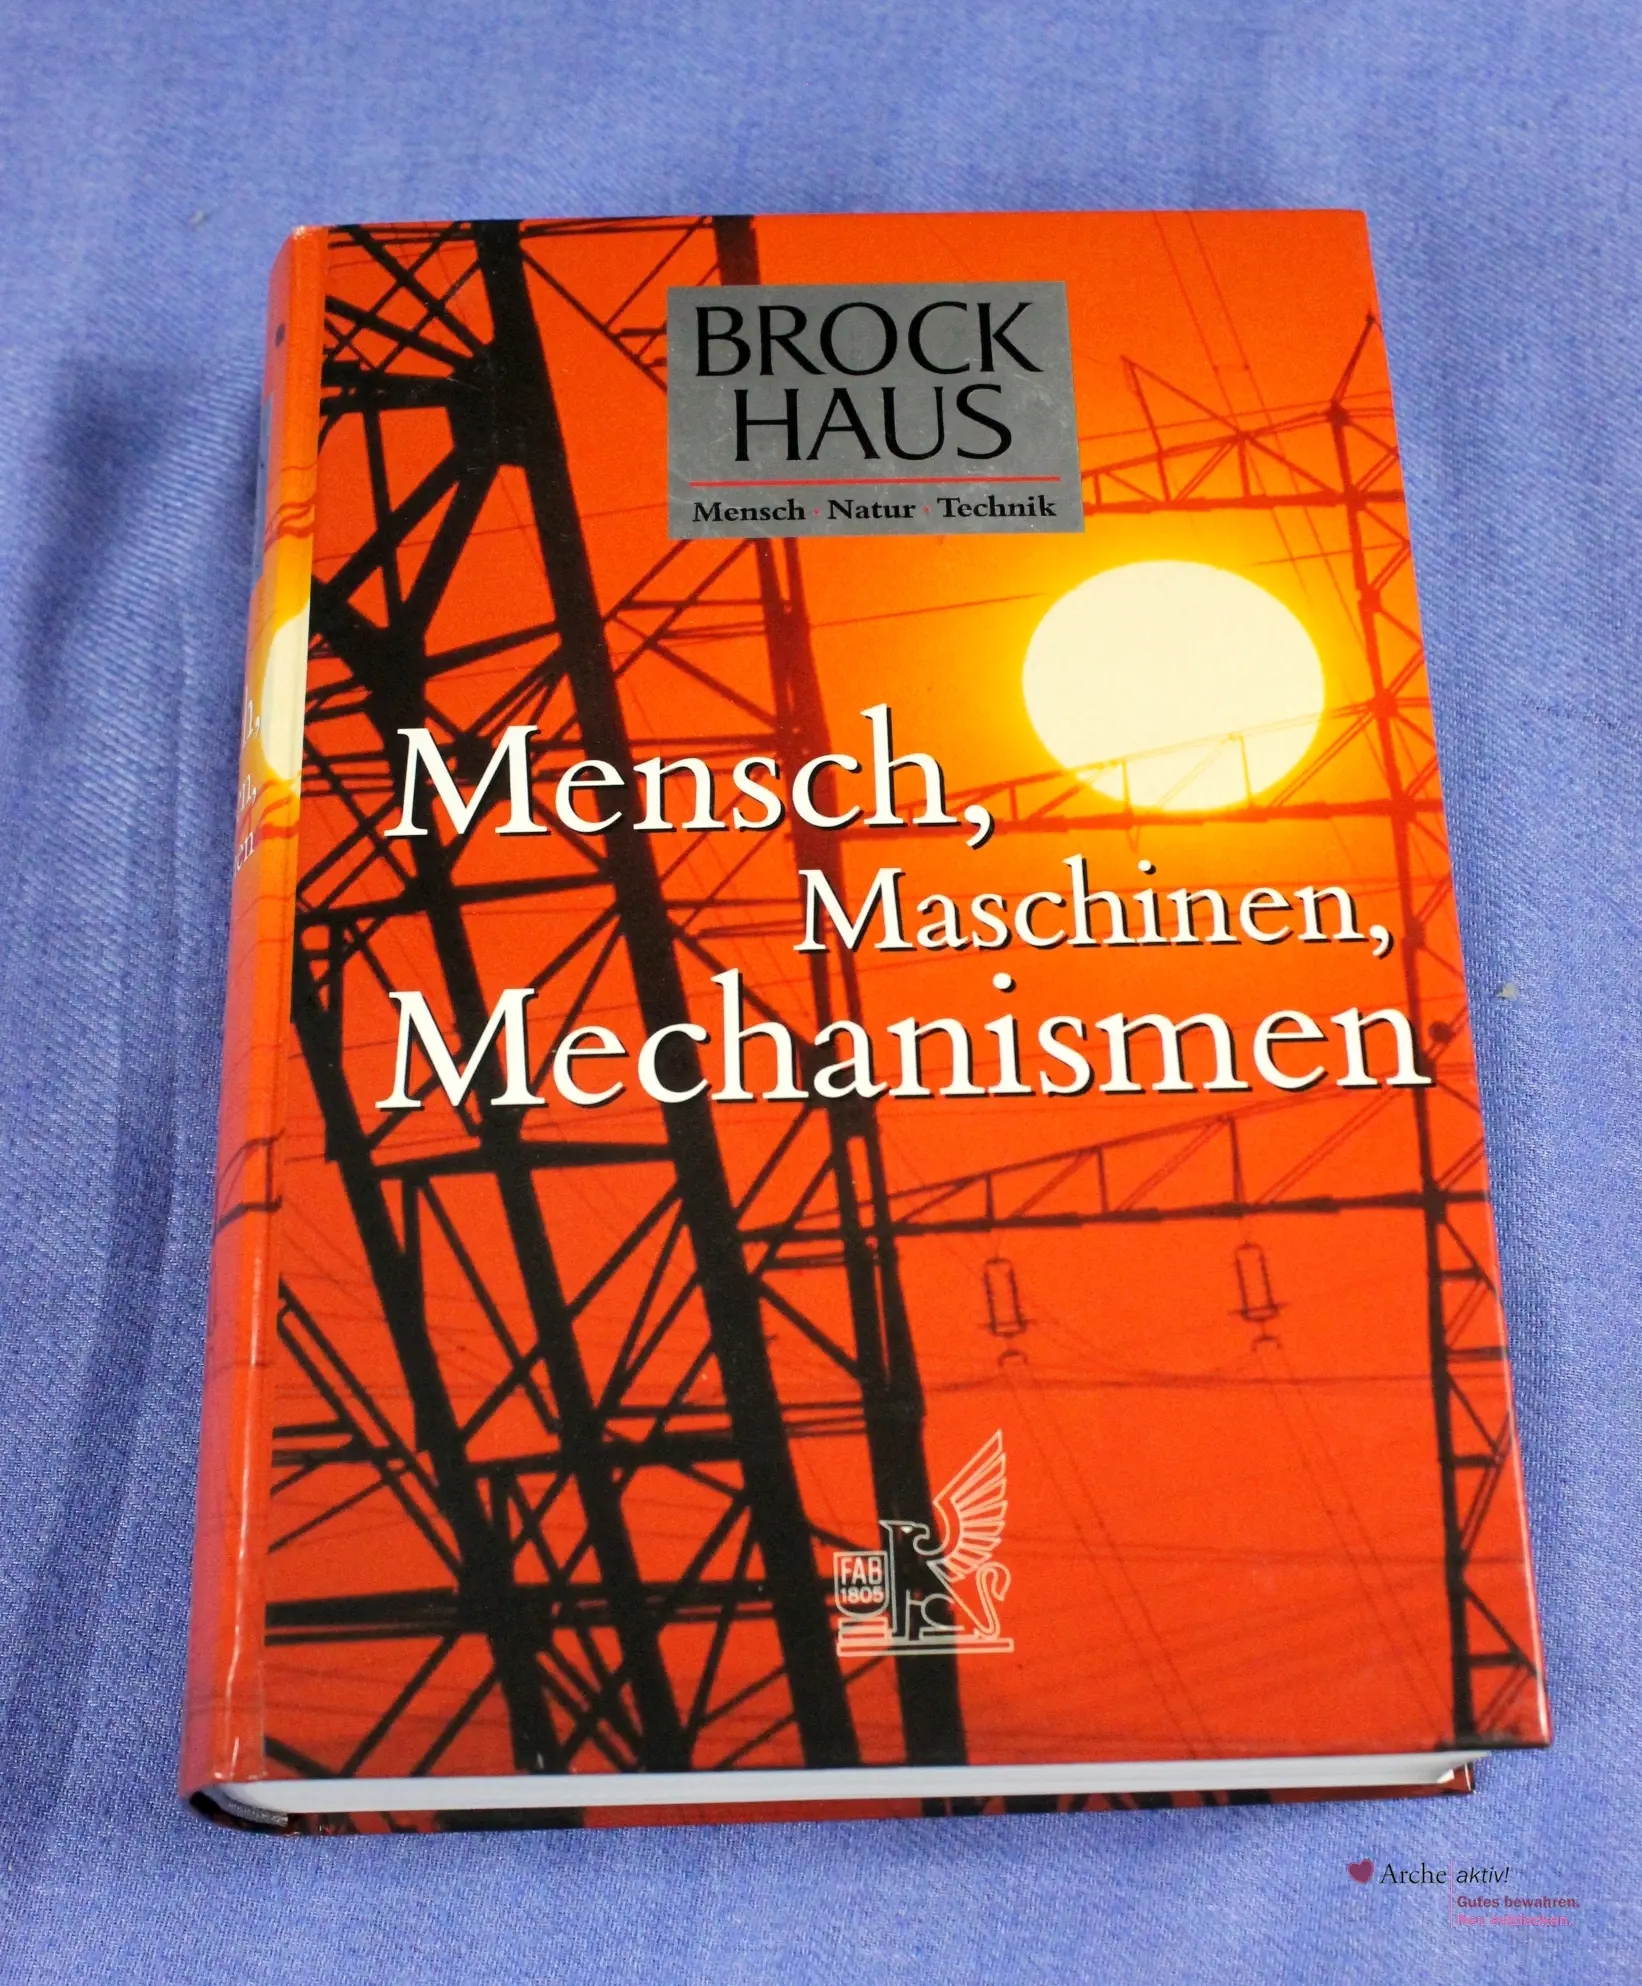 Brockhaus Mensch-Natur-Technik, Mensch, Maschinen, Mechanismen, gebraucht